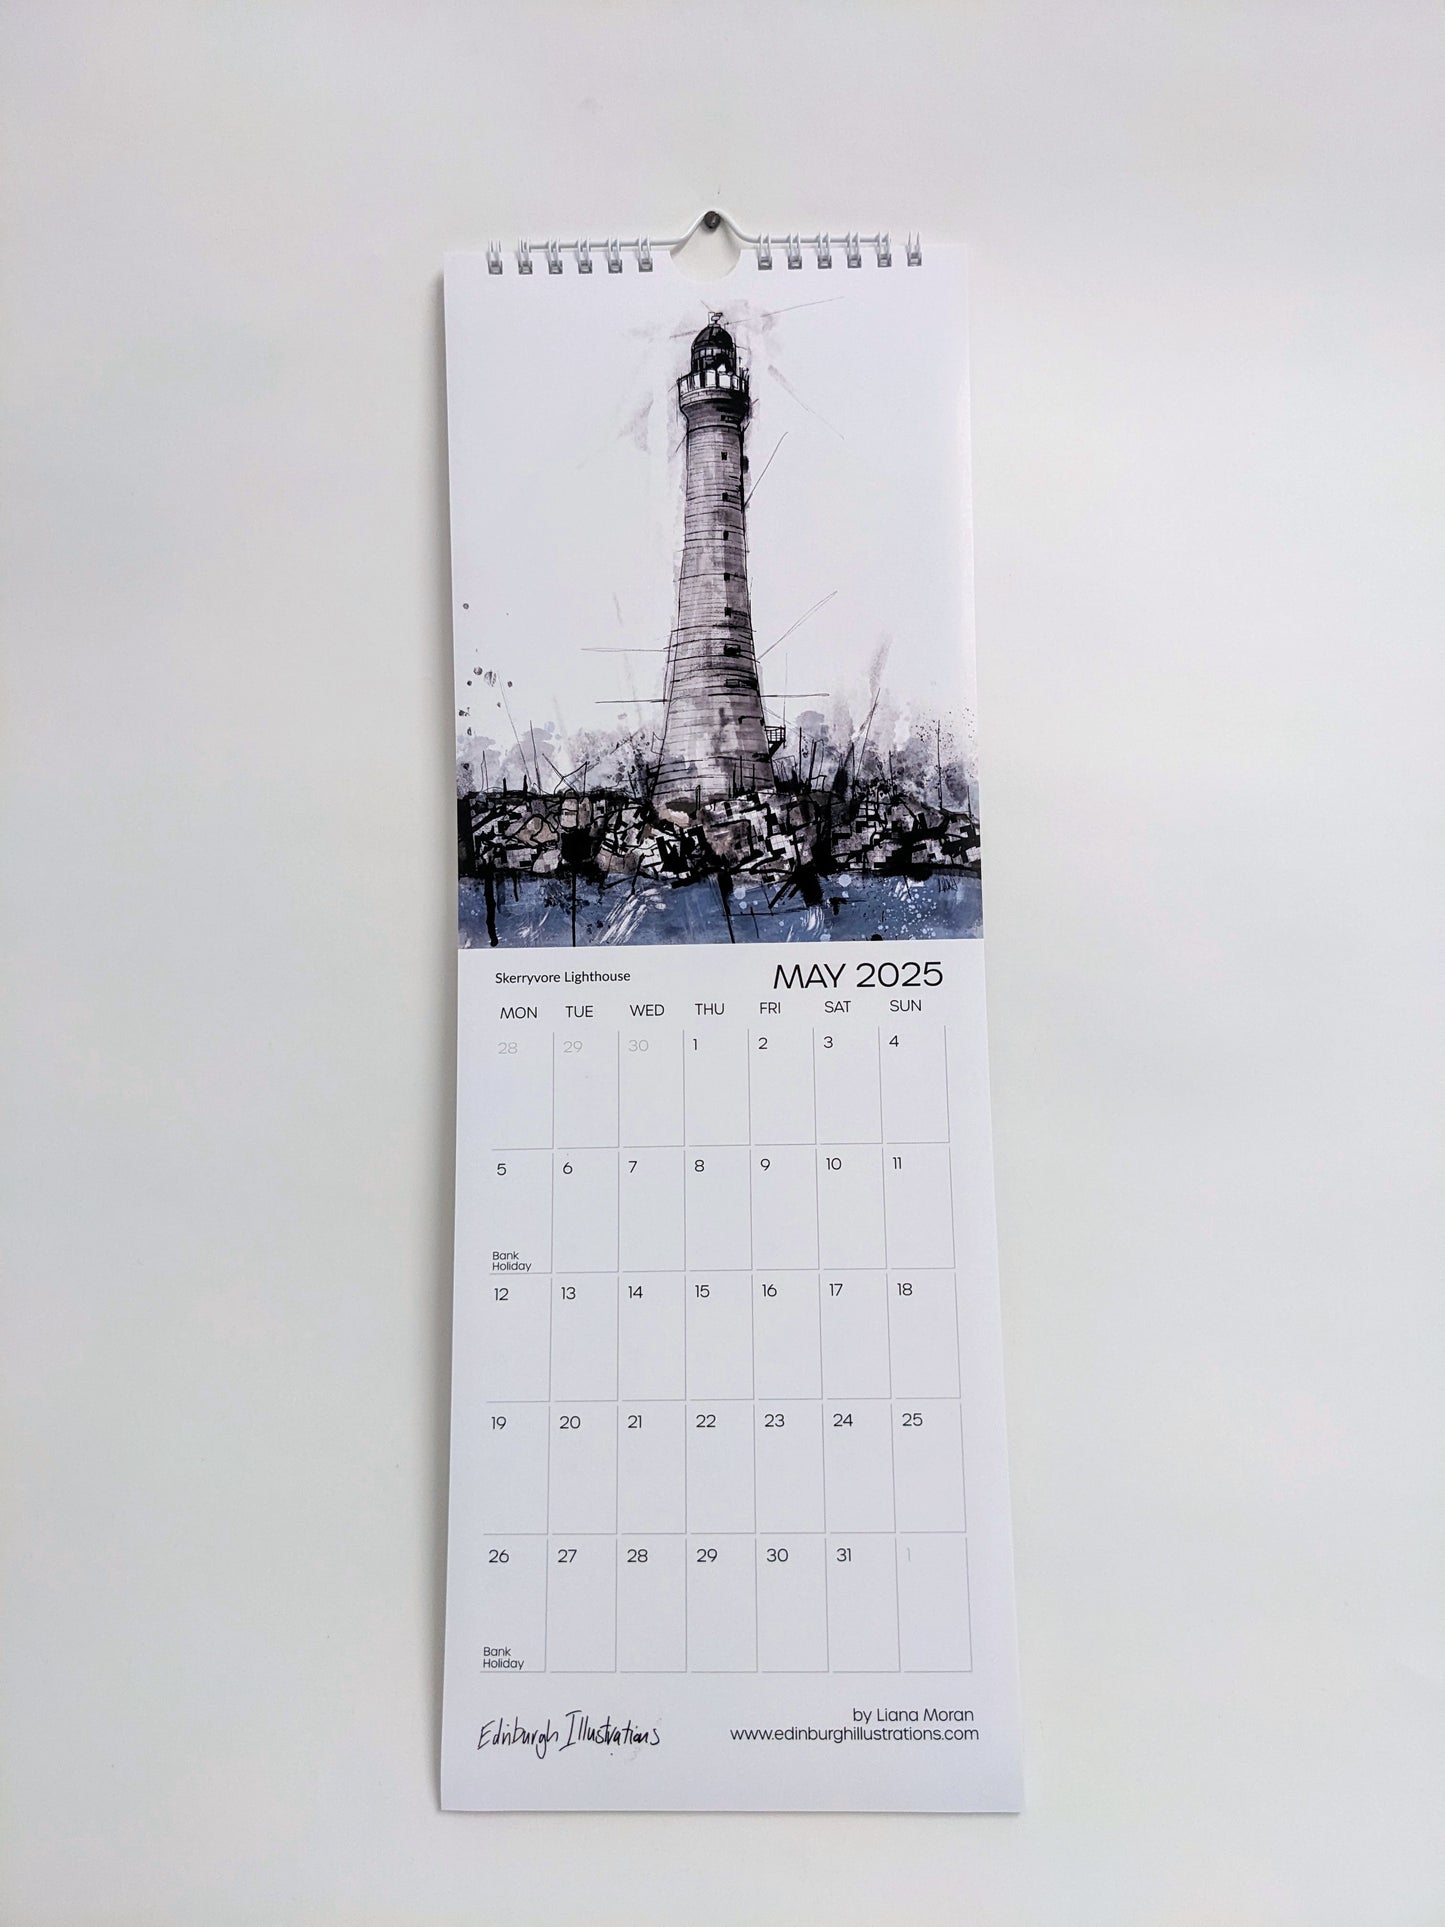 Lighthouses of Scotland Calendar 2025